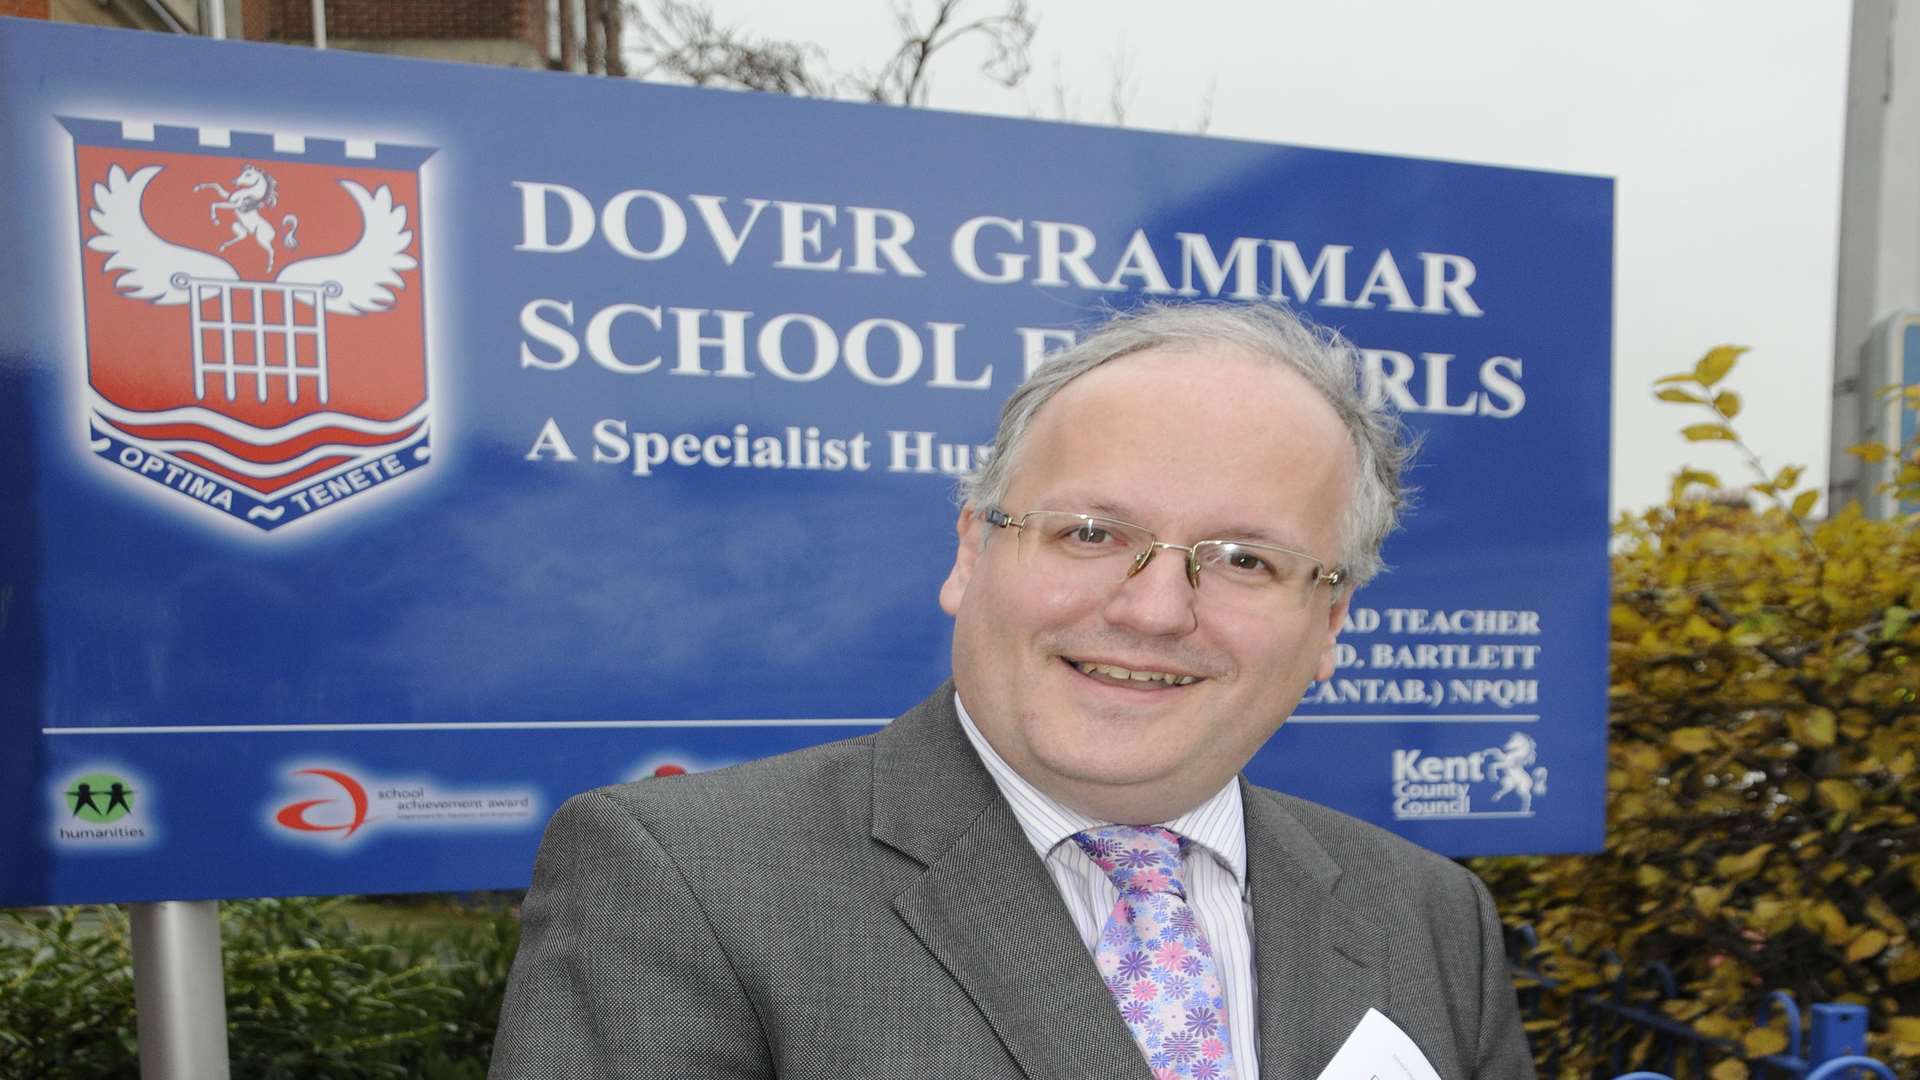 Dover Grammar School for Girls Headteacher Matthew Bartlett